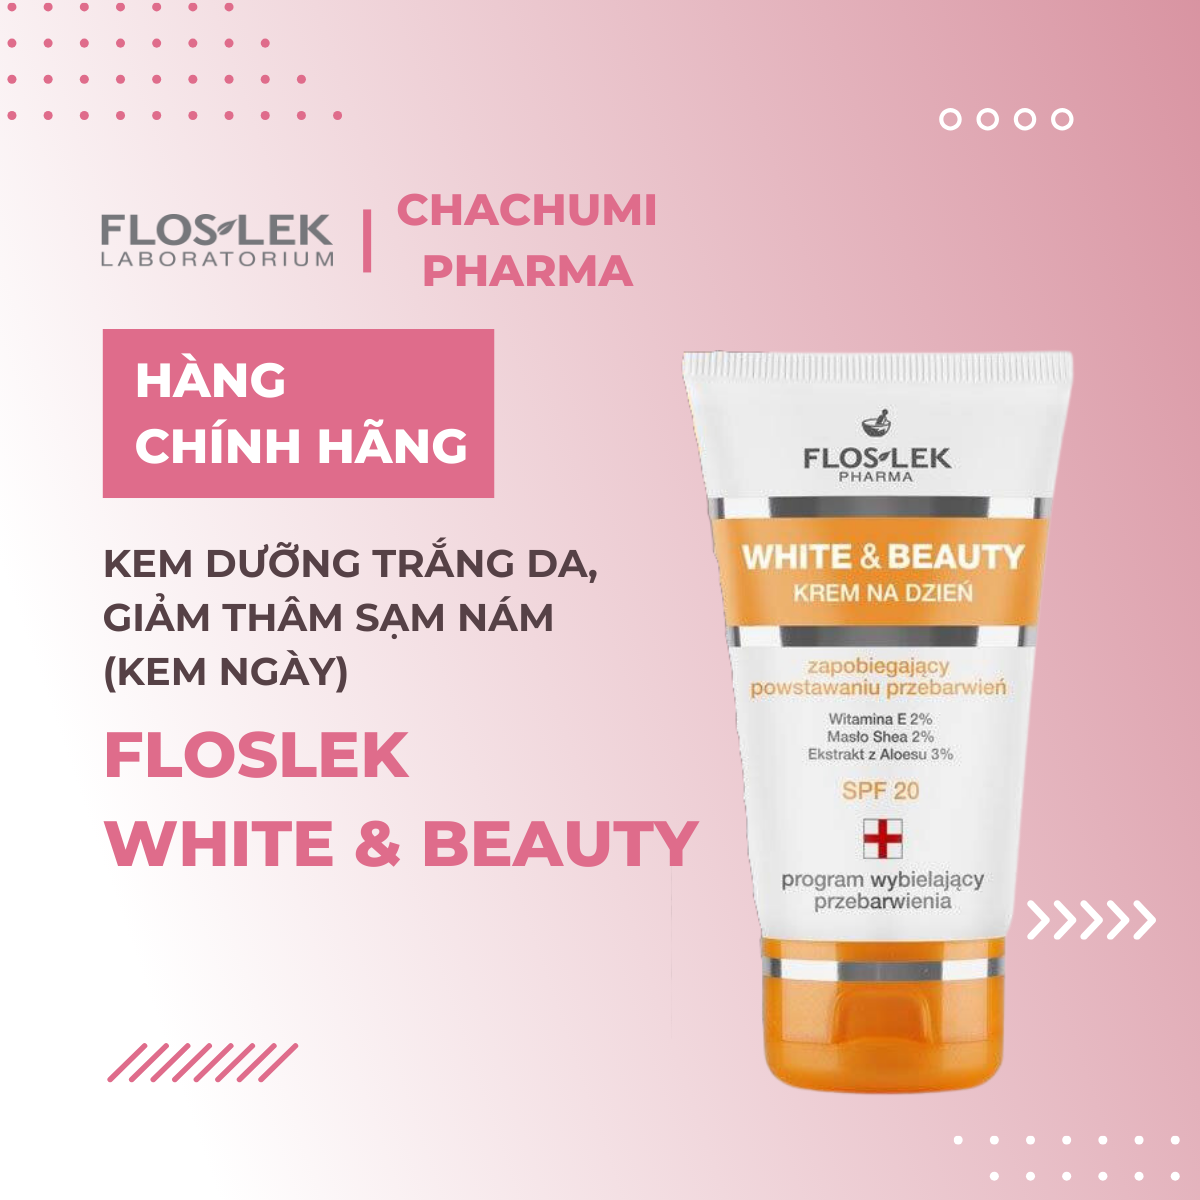 Kem Floslek White &amp; beauty dưỡng trắng da ban ngày giảm thâm sạm nám Floslek White &amp; beauty